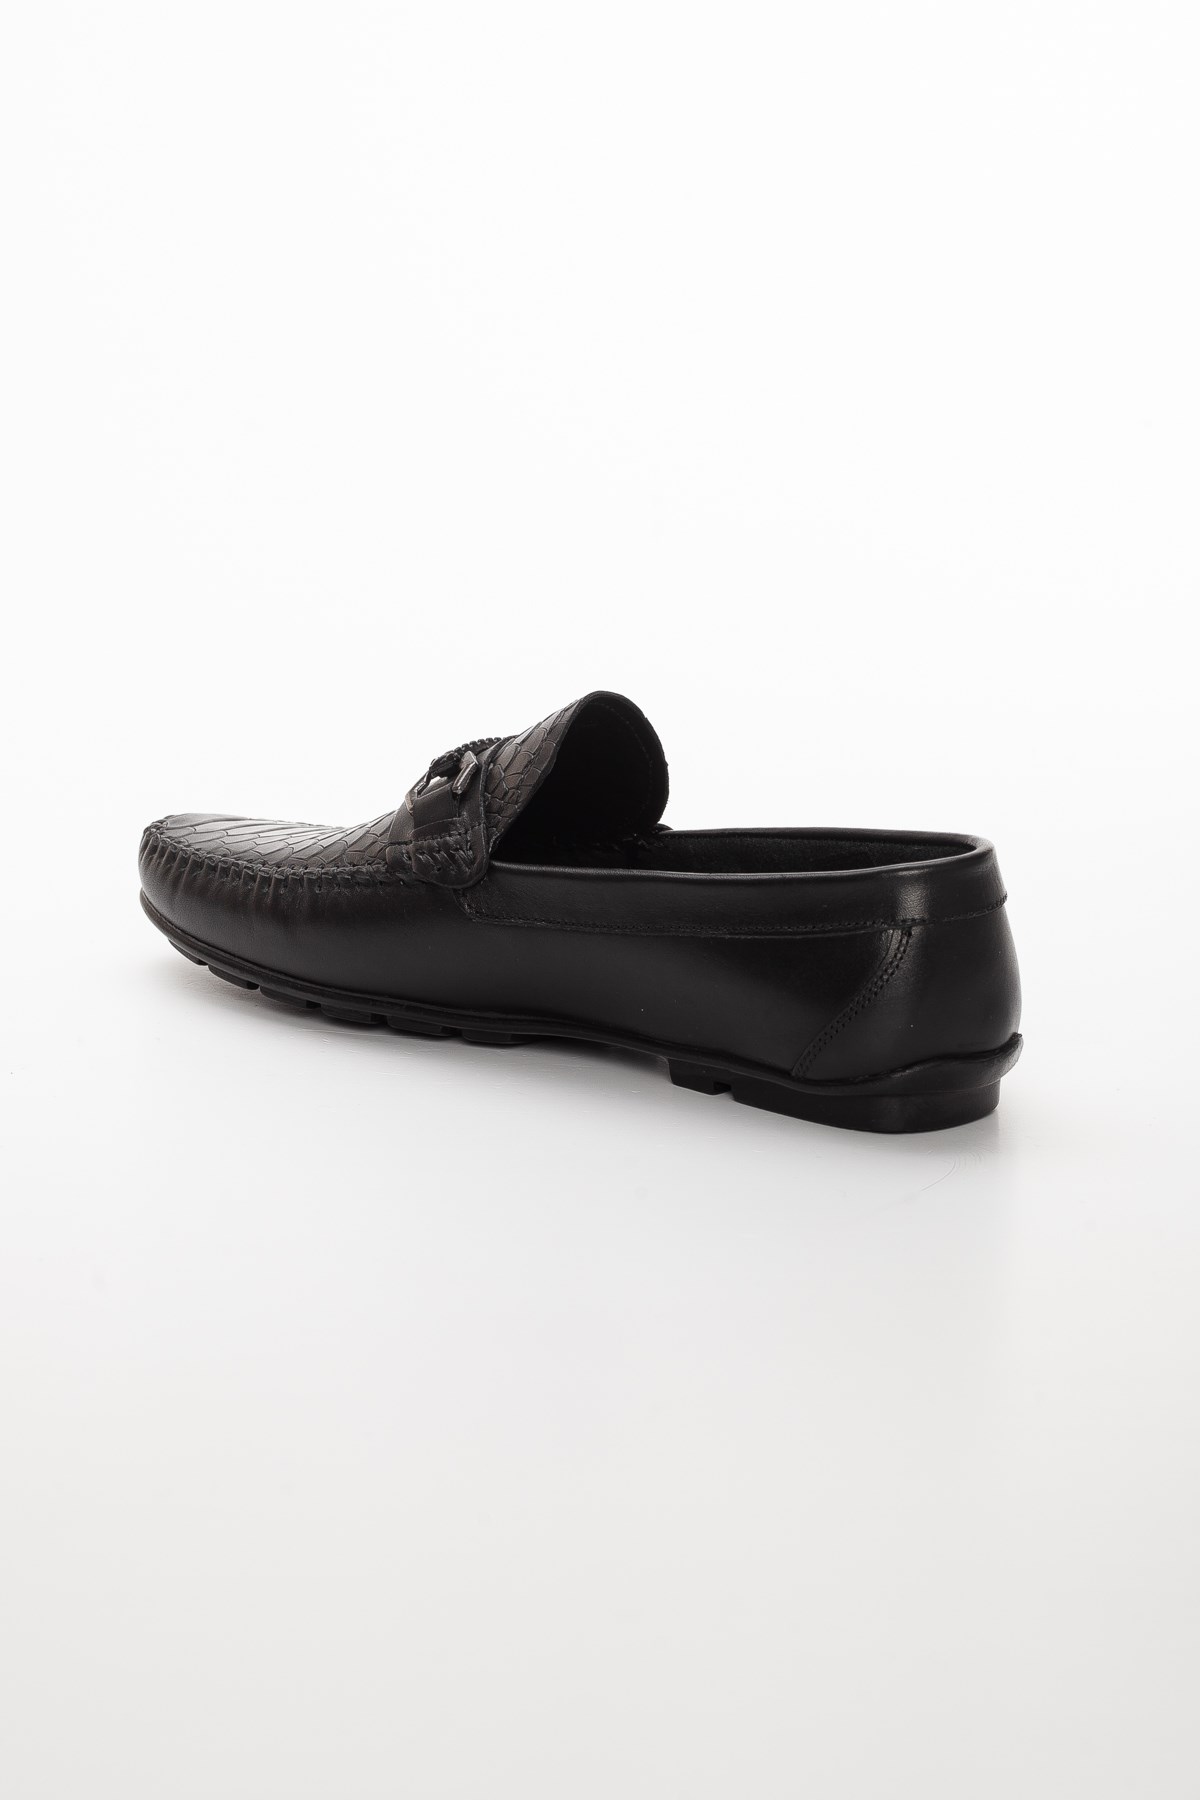 Hakiki Deri Rok Tokalı Siyah Erkek Günlük Loafer Ayakkabı